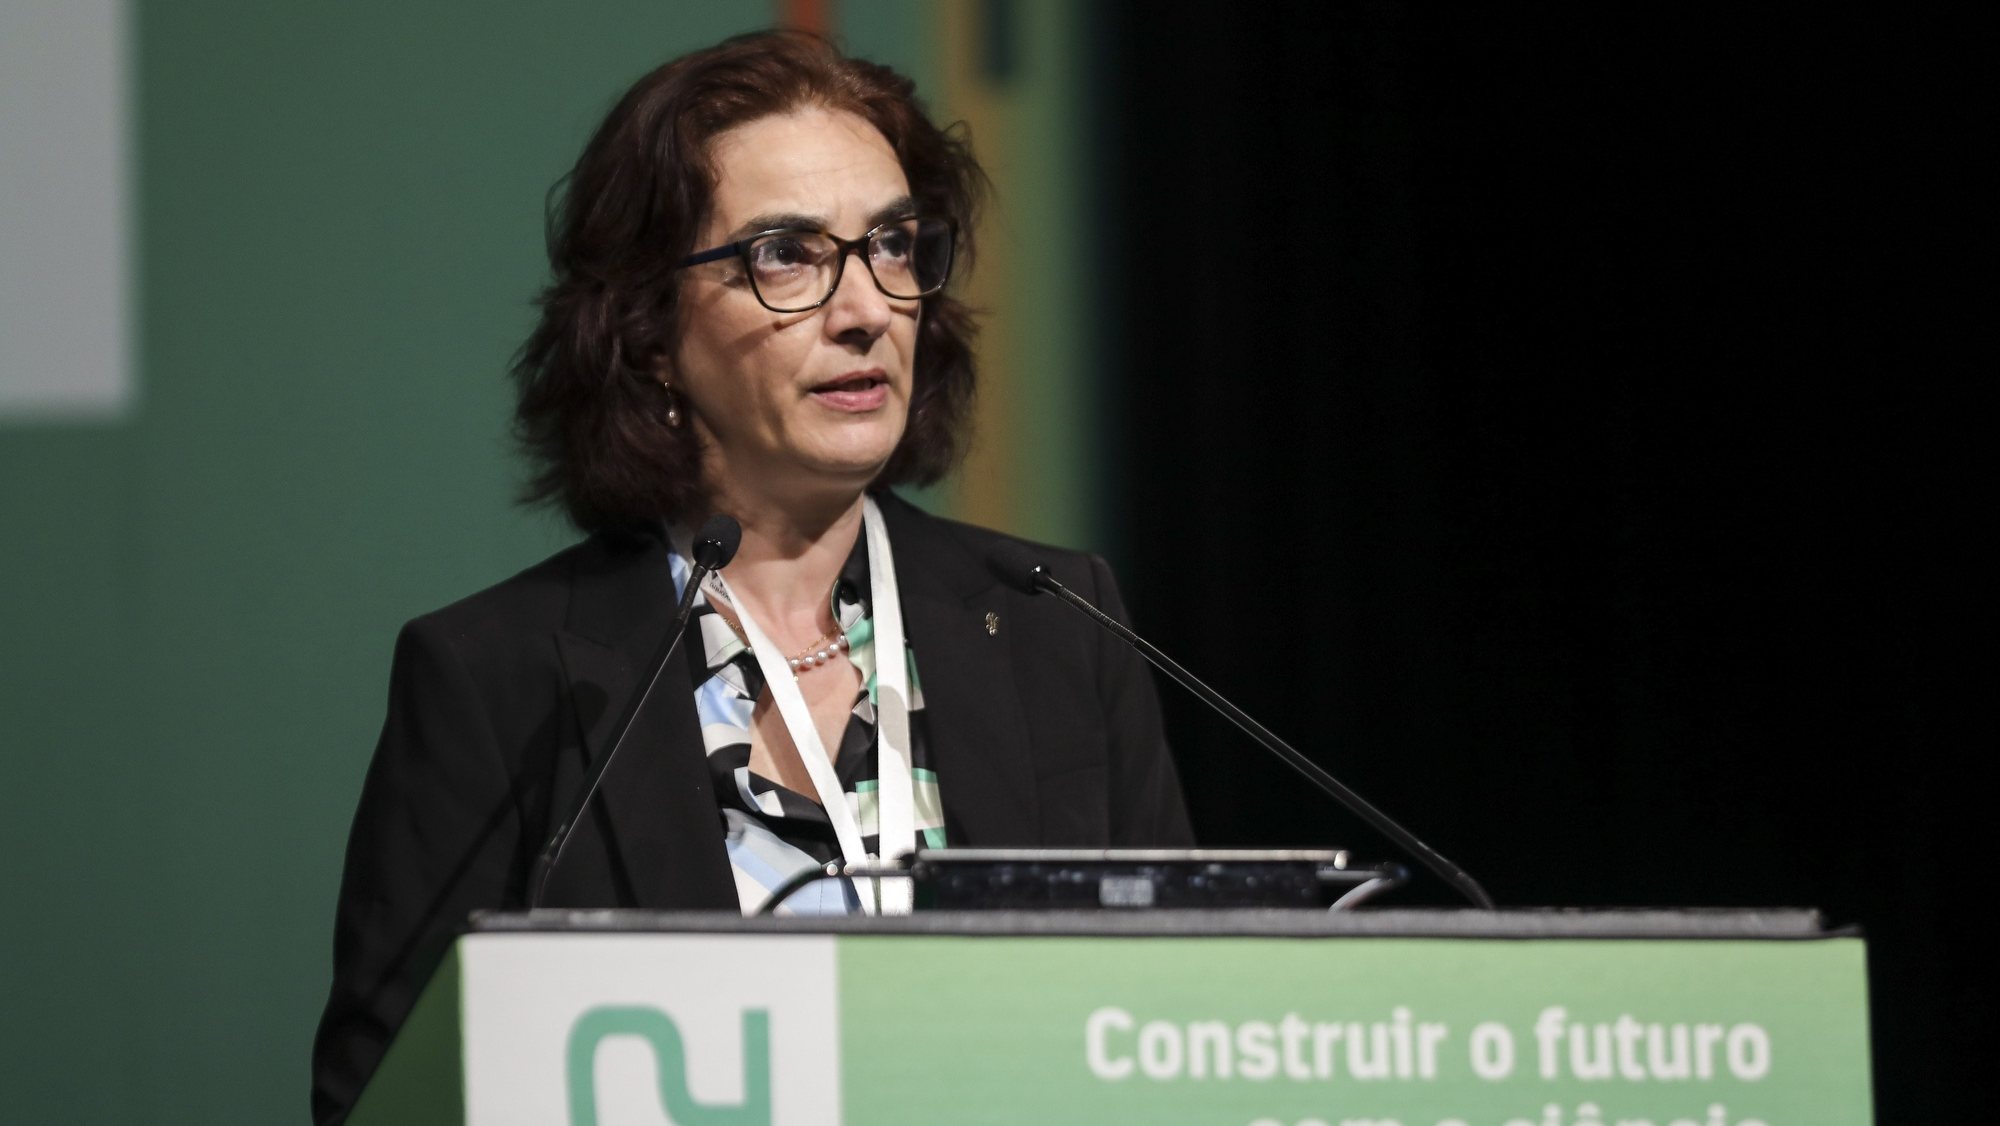 Ministra da Ciência, Tecnologia e Ensino Superior, Elvira Fortunato, intervém no Encontro Ciência 2022 a decorrer no Centro de Congressos de Lisboa, 16 de maio de 2022. MIGUEL A. LOPES/LUSA